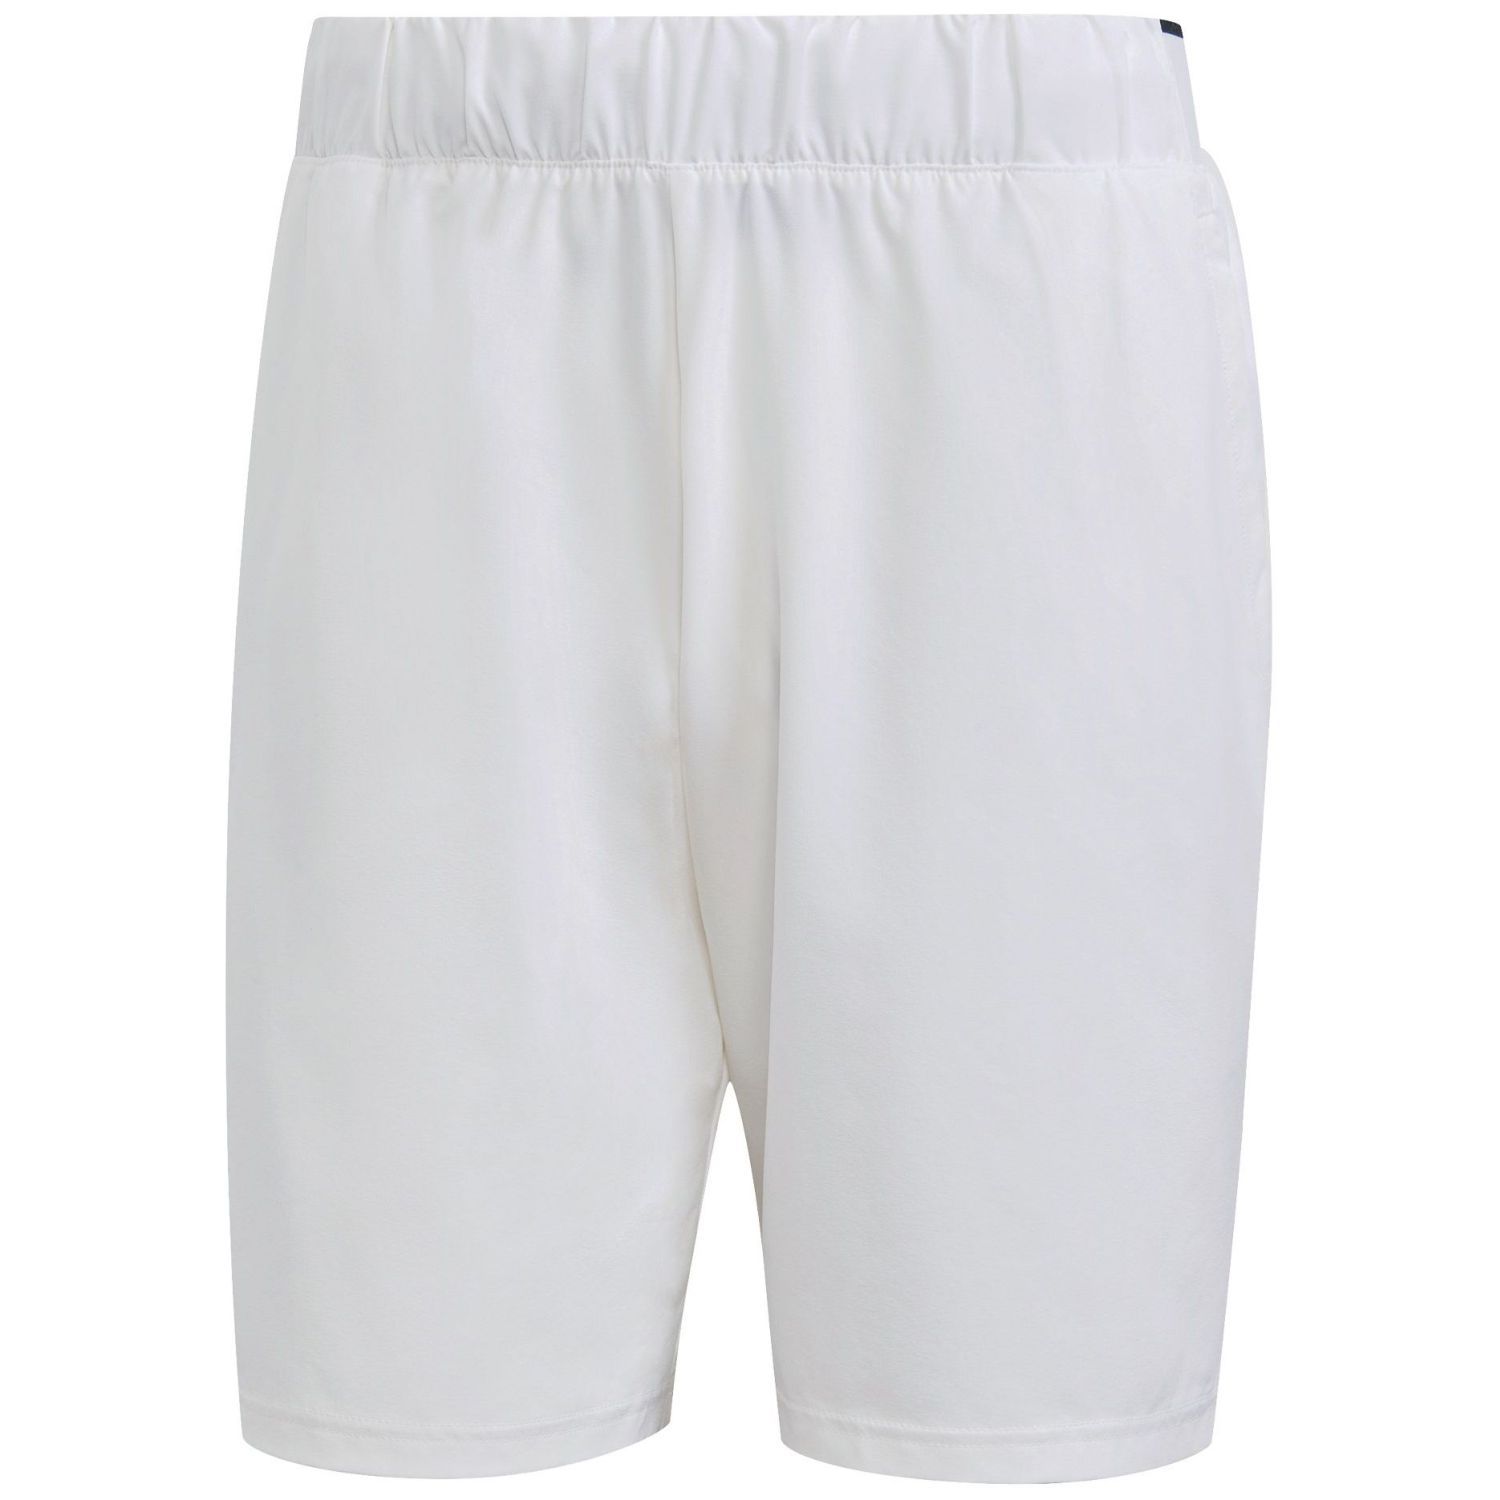 Shorts adidas Club Stretch Woven - blanco - 